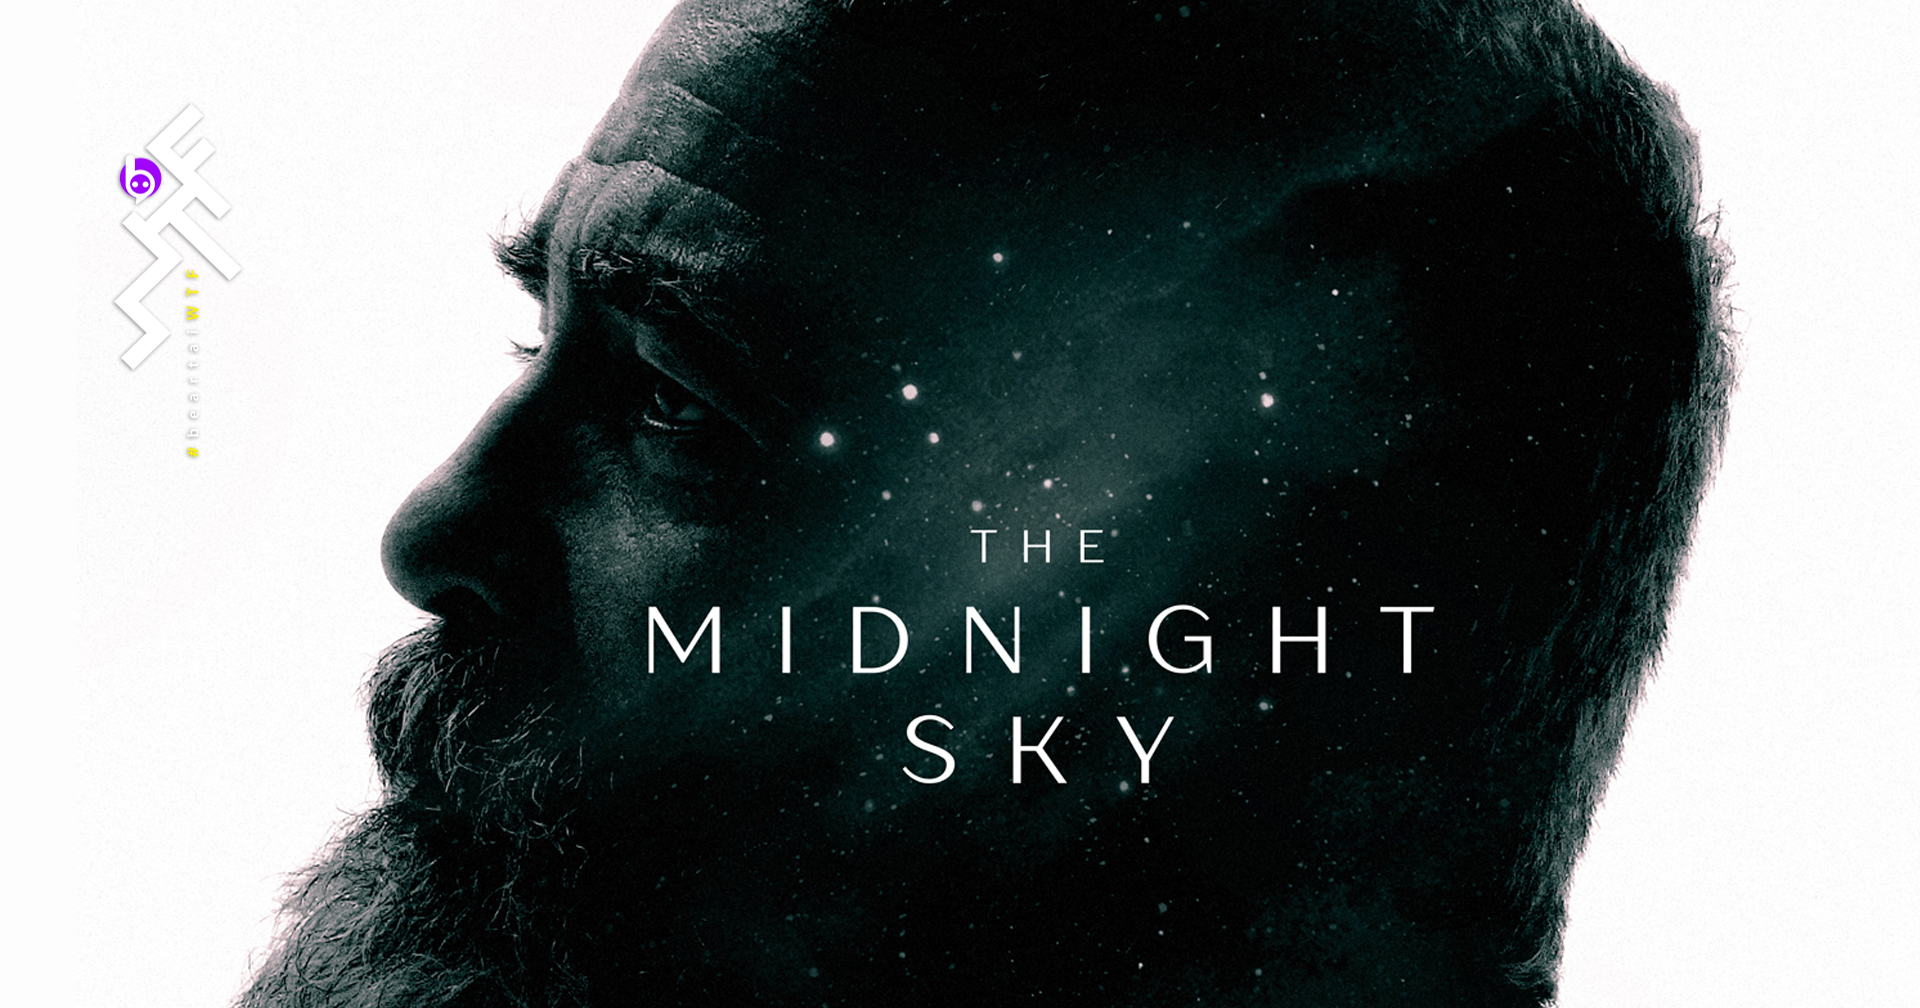 [รีวิว] The Midnight Sky: ไกลสุดหมู่ดารา หาไม่เจอสิ่งสำคัญใกล้ตัว ดราม่าครอบครัว นิ่ง ๆ อิงไซไฟบางเบา